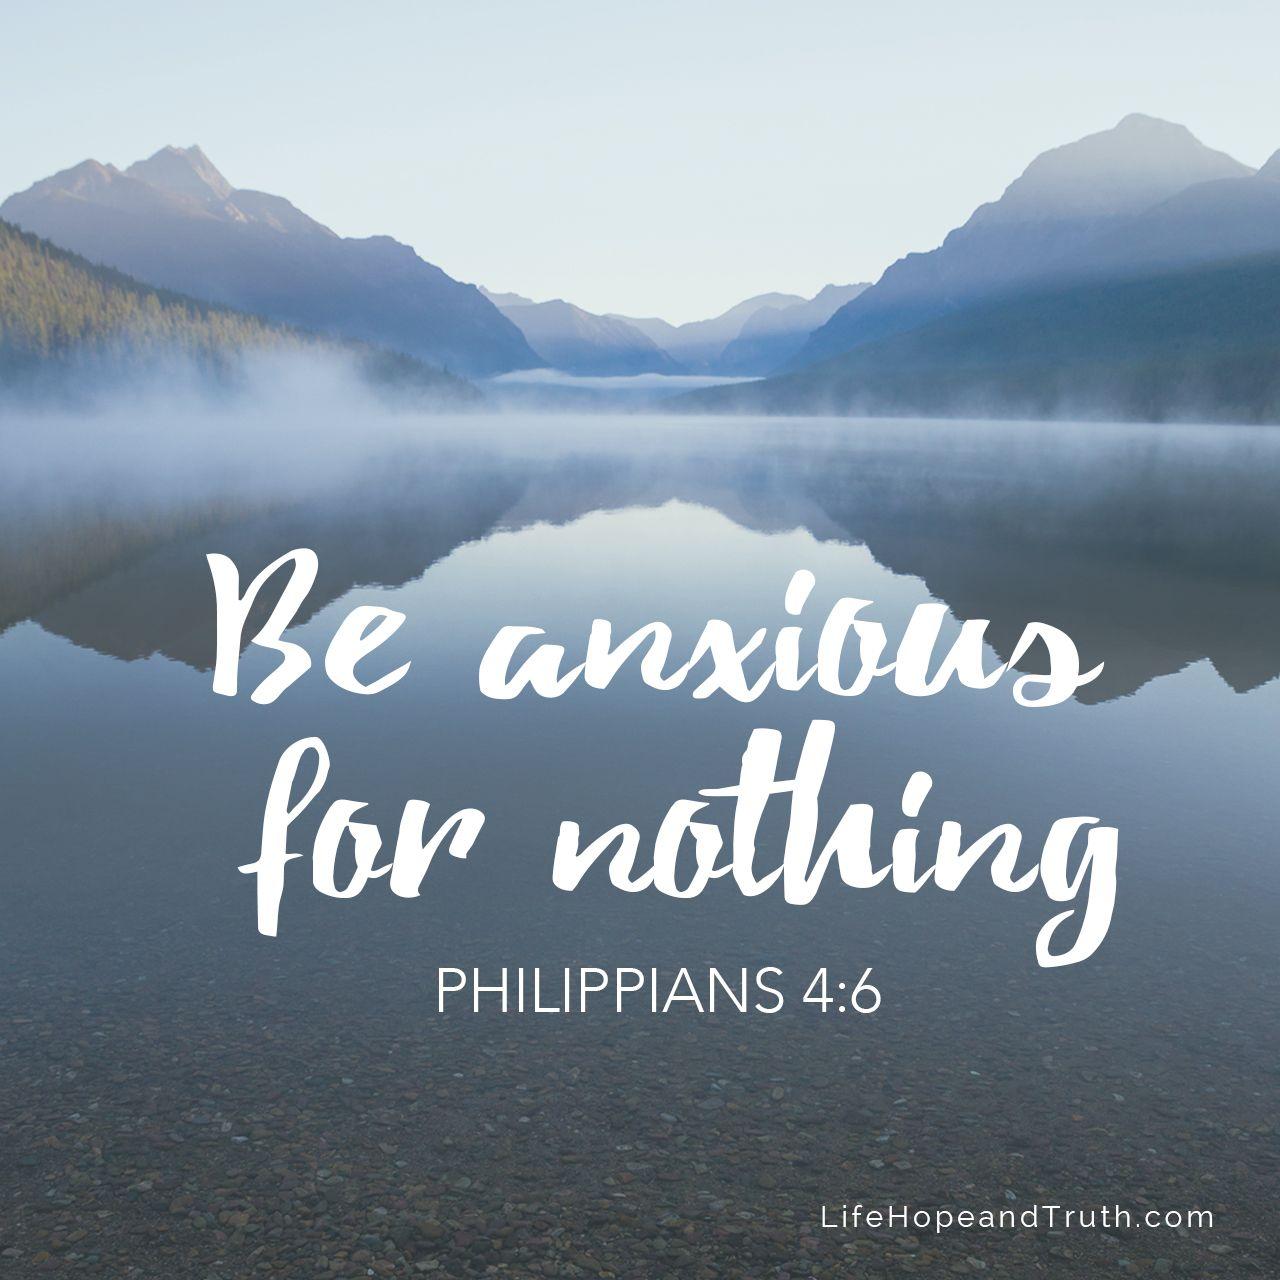 Philippians 4:6.